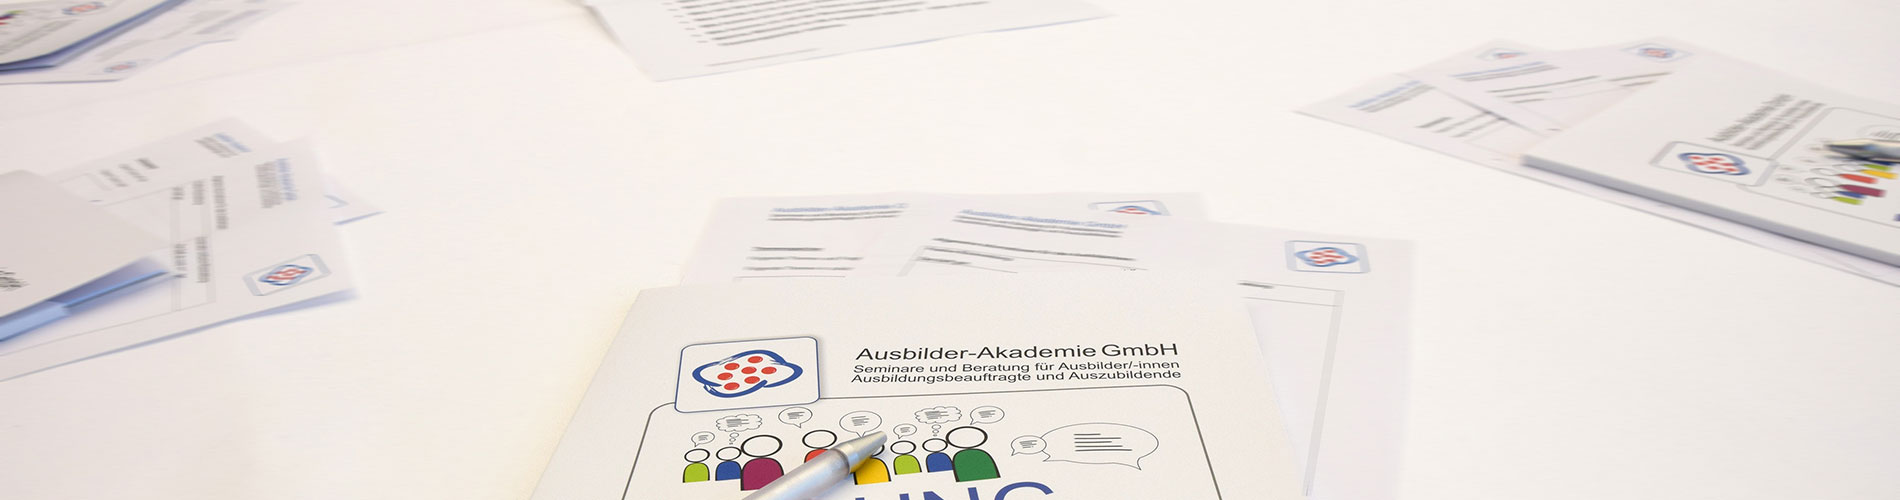 Ausbilder-Akademie GmbH